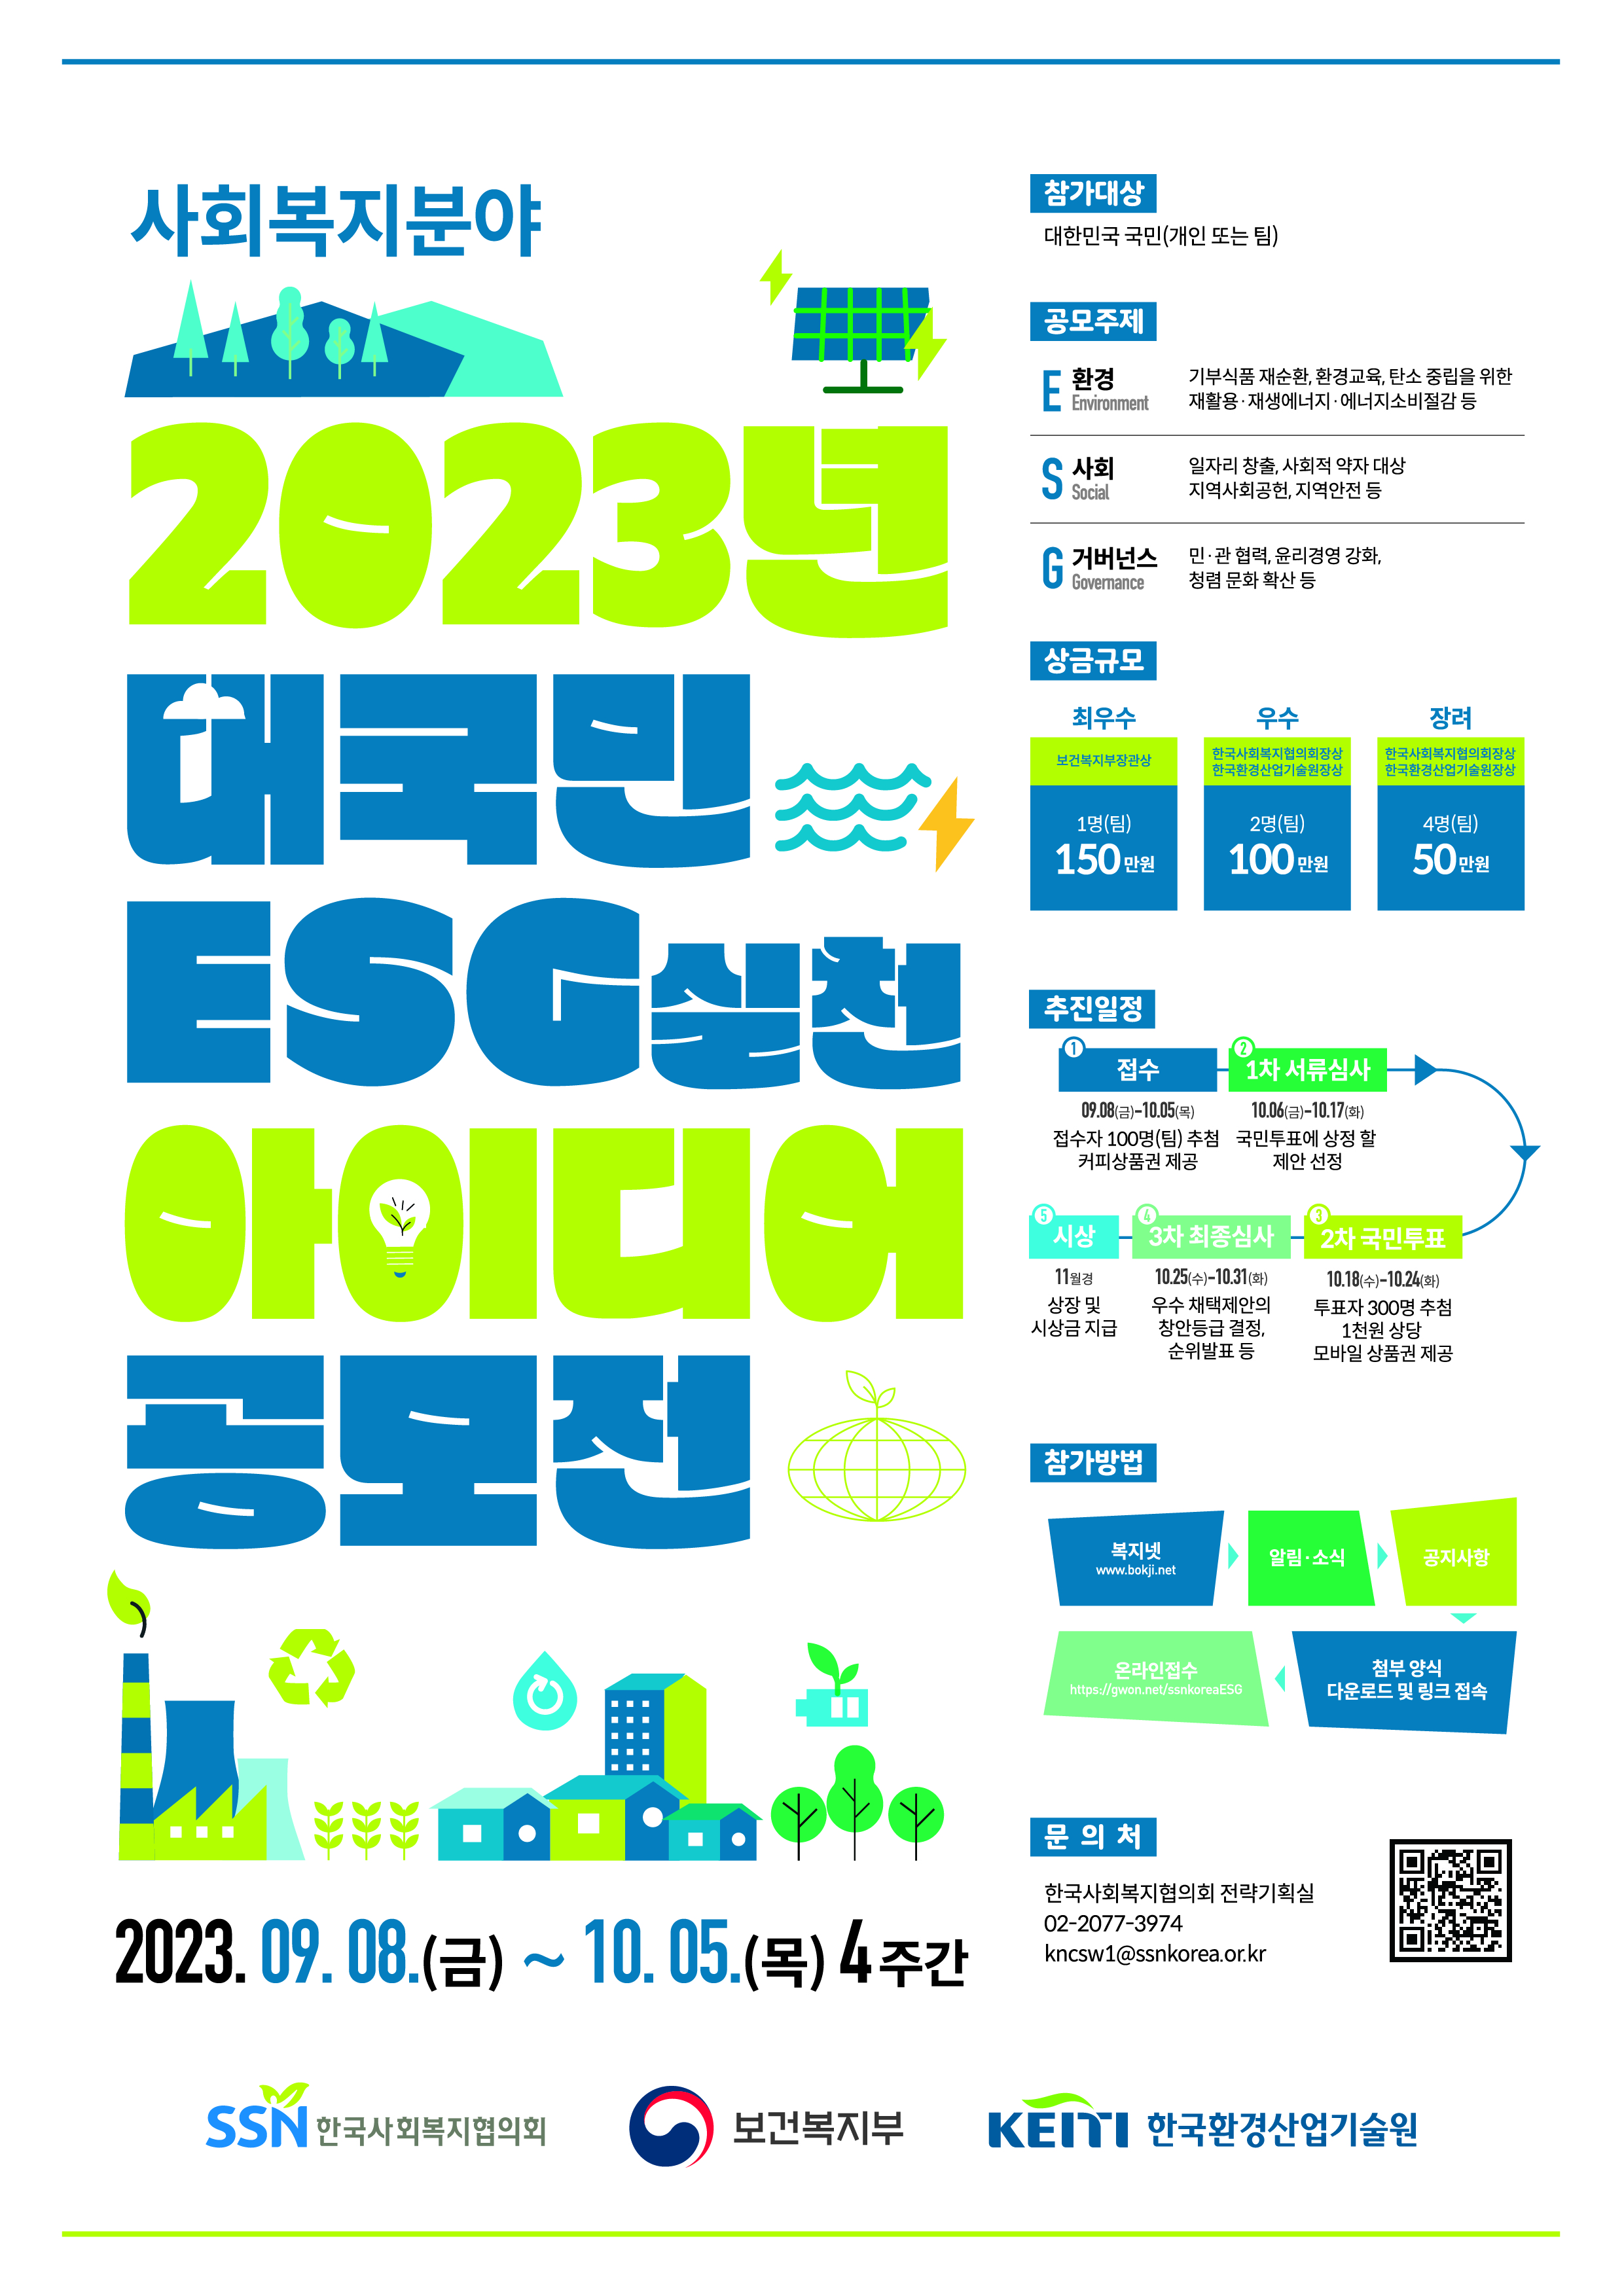 2023년 대국민 ESG 실천 아이디어 공모전 공고    한국사회복지협의회는 ESG(환경, 사회, 지배구조)의 창의적인 아이디어를 발굴하여 선도적인 ESG 복지경영을 실현하고자 아래와 같이「2023년 대국민 ESG 실천 아이디어 공모전」을 개최하오니 많은 관심과 참여 바랍니다.  2023년 9월 8일 한국사회복지협의회장    1  공모 개요      □ (공모전명) 2023년 대국민 ESG 실천을 위한 대국민 아이디어 공모전     * ESG란?         E(환경 : 기부식품 재순환, 환경교육 등), S(사회 : 일자리 창출, 사회적 약자 대상 지역사회공헌 등), G(지배구조 : 윤리경영, 청렴문화 등)   □ (공모목적) 지속가능발전 복지 현장을 위한 분야별 실천사업 발굴    □ (공모기간) 2023.09.08.(금) ~ 10.05.(목) 18:00 (예정)   □ (참여대상) 대한민국 국민(개인 또는 팀)   □ (접수방법) 복지넷 (www.bokji.net) ？ 알림·소식 ？ 공지사항 ？ 첨부 양식 다운로드 및 링크 접속 ？ 신청서, 동의서 등 관련 서류 제출        - 서류 제출 : 온라인 접수(https://gwon.net/ssnkoreaESG)   제출서류 * ①~③ 필수 제출 ① 신청서(첨부양식) 1부 ② 동의서(첨부양식) 1부 ③ 제안서(첨부양식) 1부   분야 내용 E(환경) 기부식품 재순환, 환경교육, 탄소 중립을 위한 재활용·재생에너지· 에너지소비절감 등 S(사회) 일자리 창출, 사회적 약자 대상 지역사회공헌 및 동반성장, 자원봉사(VMS) 및  멘토링 나눔 문화 확산, 지역안전 등 G(거버넌스) 윤리경영 강화 · 청렴문화 확산 등 조직문화 개선, 정보공시·소통강화 민·관 협력 등  □ (공모주제) 복지 현장에서 ESG를 실천할 수 있는 정책 아이디어    □ (추진절차)  접    수 9.8(금)~10.5(목) ▶ 1차 서류심사 10.6(금)~10.17(화) ▶ 2차 국민투표 10.18(수)~10.24(화) ▶ 3차 최종심사 10.25(수)~10.31(화) ▶ 시    상 11월      접수자 100명(팀) 추첨 커피상품권 제공 국민투표에 상정  할 제안 선정 투표자 300명 추첨 1천원 상당  모바일 상품권 제공 우수 채택제안의 창안등급 결정, 순위발표 등 상장 및 시상금 지급       ※ 해당 일정은 ‘코로나19’확산 등 내·외부환경 여건에 따라 변경 가능    ※ 단계별 일정은 복지넷 홈페이지 공지 및 개별 안내 예정 